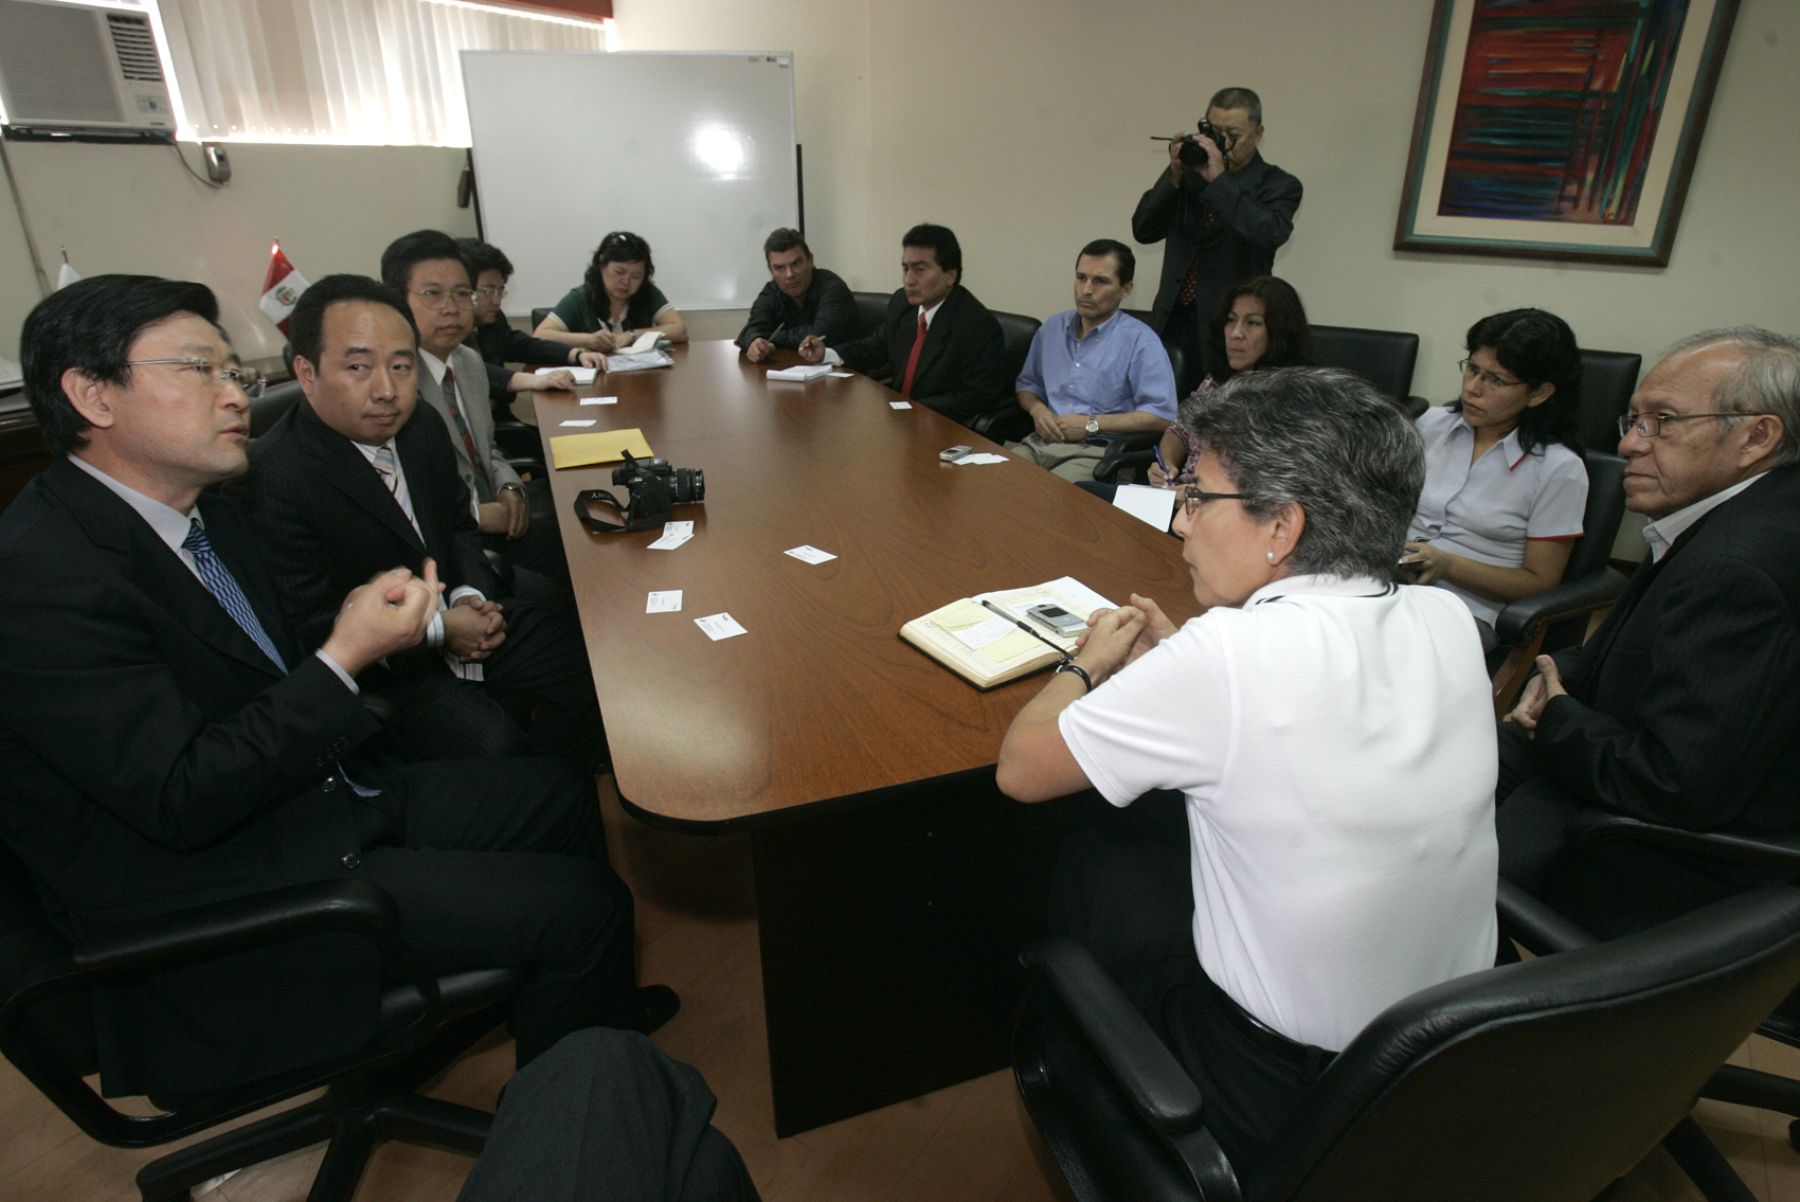 Delegación de agencia Xinhua visita instalaciones de Andina y Editora Perú Foto:ANDINA/Juan Carlos Guzmán Negrini.